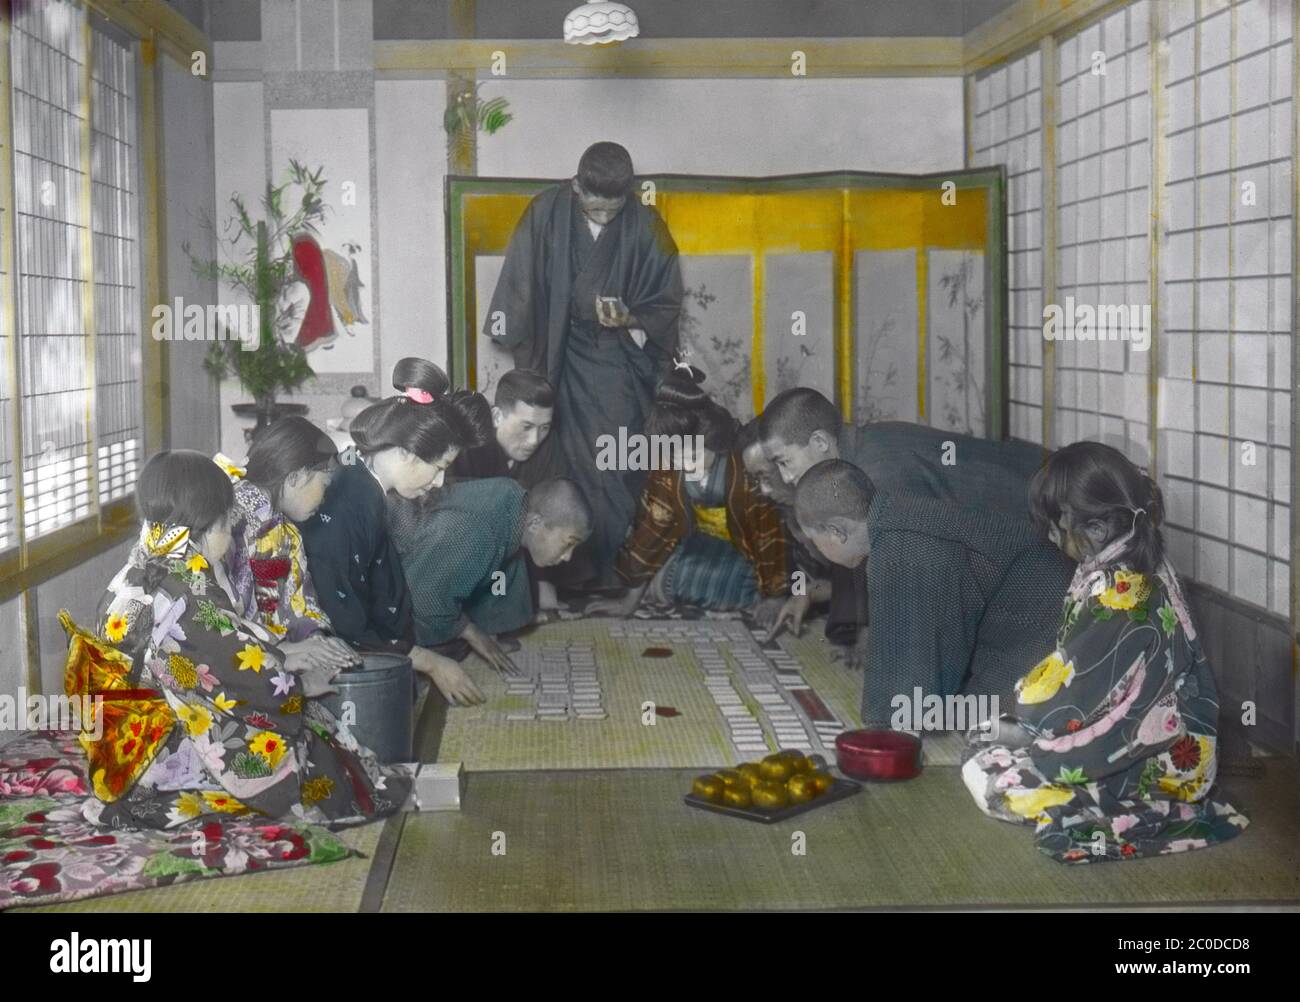 [ 1900s Japon - jouer à Karuta au nouvel an ] — membres de la famille jouant à Karuta au nouvel an. Une personne lit une partie d'un poème sur une carte yomifuda (lecture), tandis que d'autres tentent d'être les premiers à obtenir les cartes torifuda correspondantes (saisie) avec le reste du poème. Les poèmes sont issus de l'anthologie japonaise classique d'une centaine de waka japonais par une centaine de poètes connus sous le nom d'Ogura Hyakunin Isshu (小倉百人一首). Le jeu est toujours joué pendant le nouvel an aujourd'hui. diapositive en verre vintage du xxe siècle. Banque D'Images